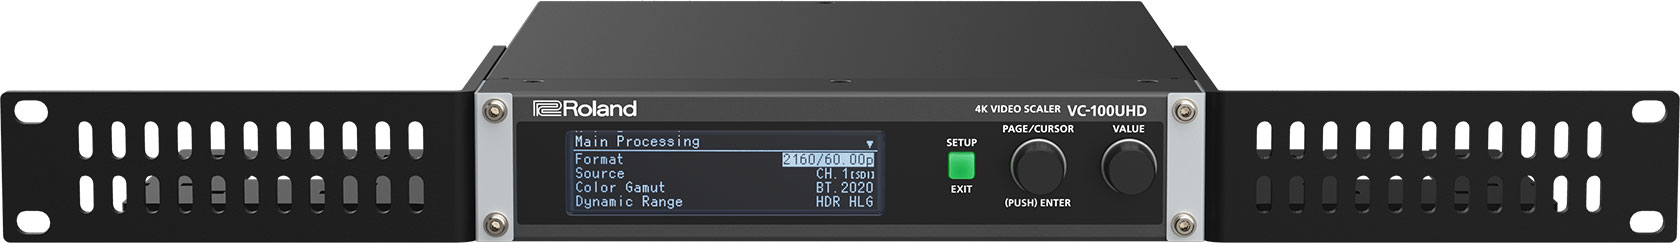 Roland Pro A/V - VC-100UHD | 4K Video Scaler